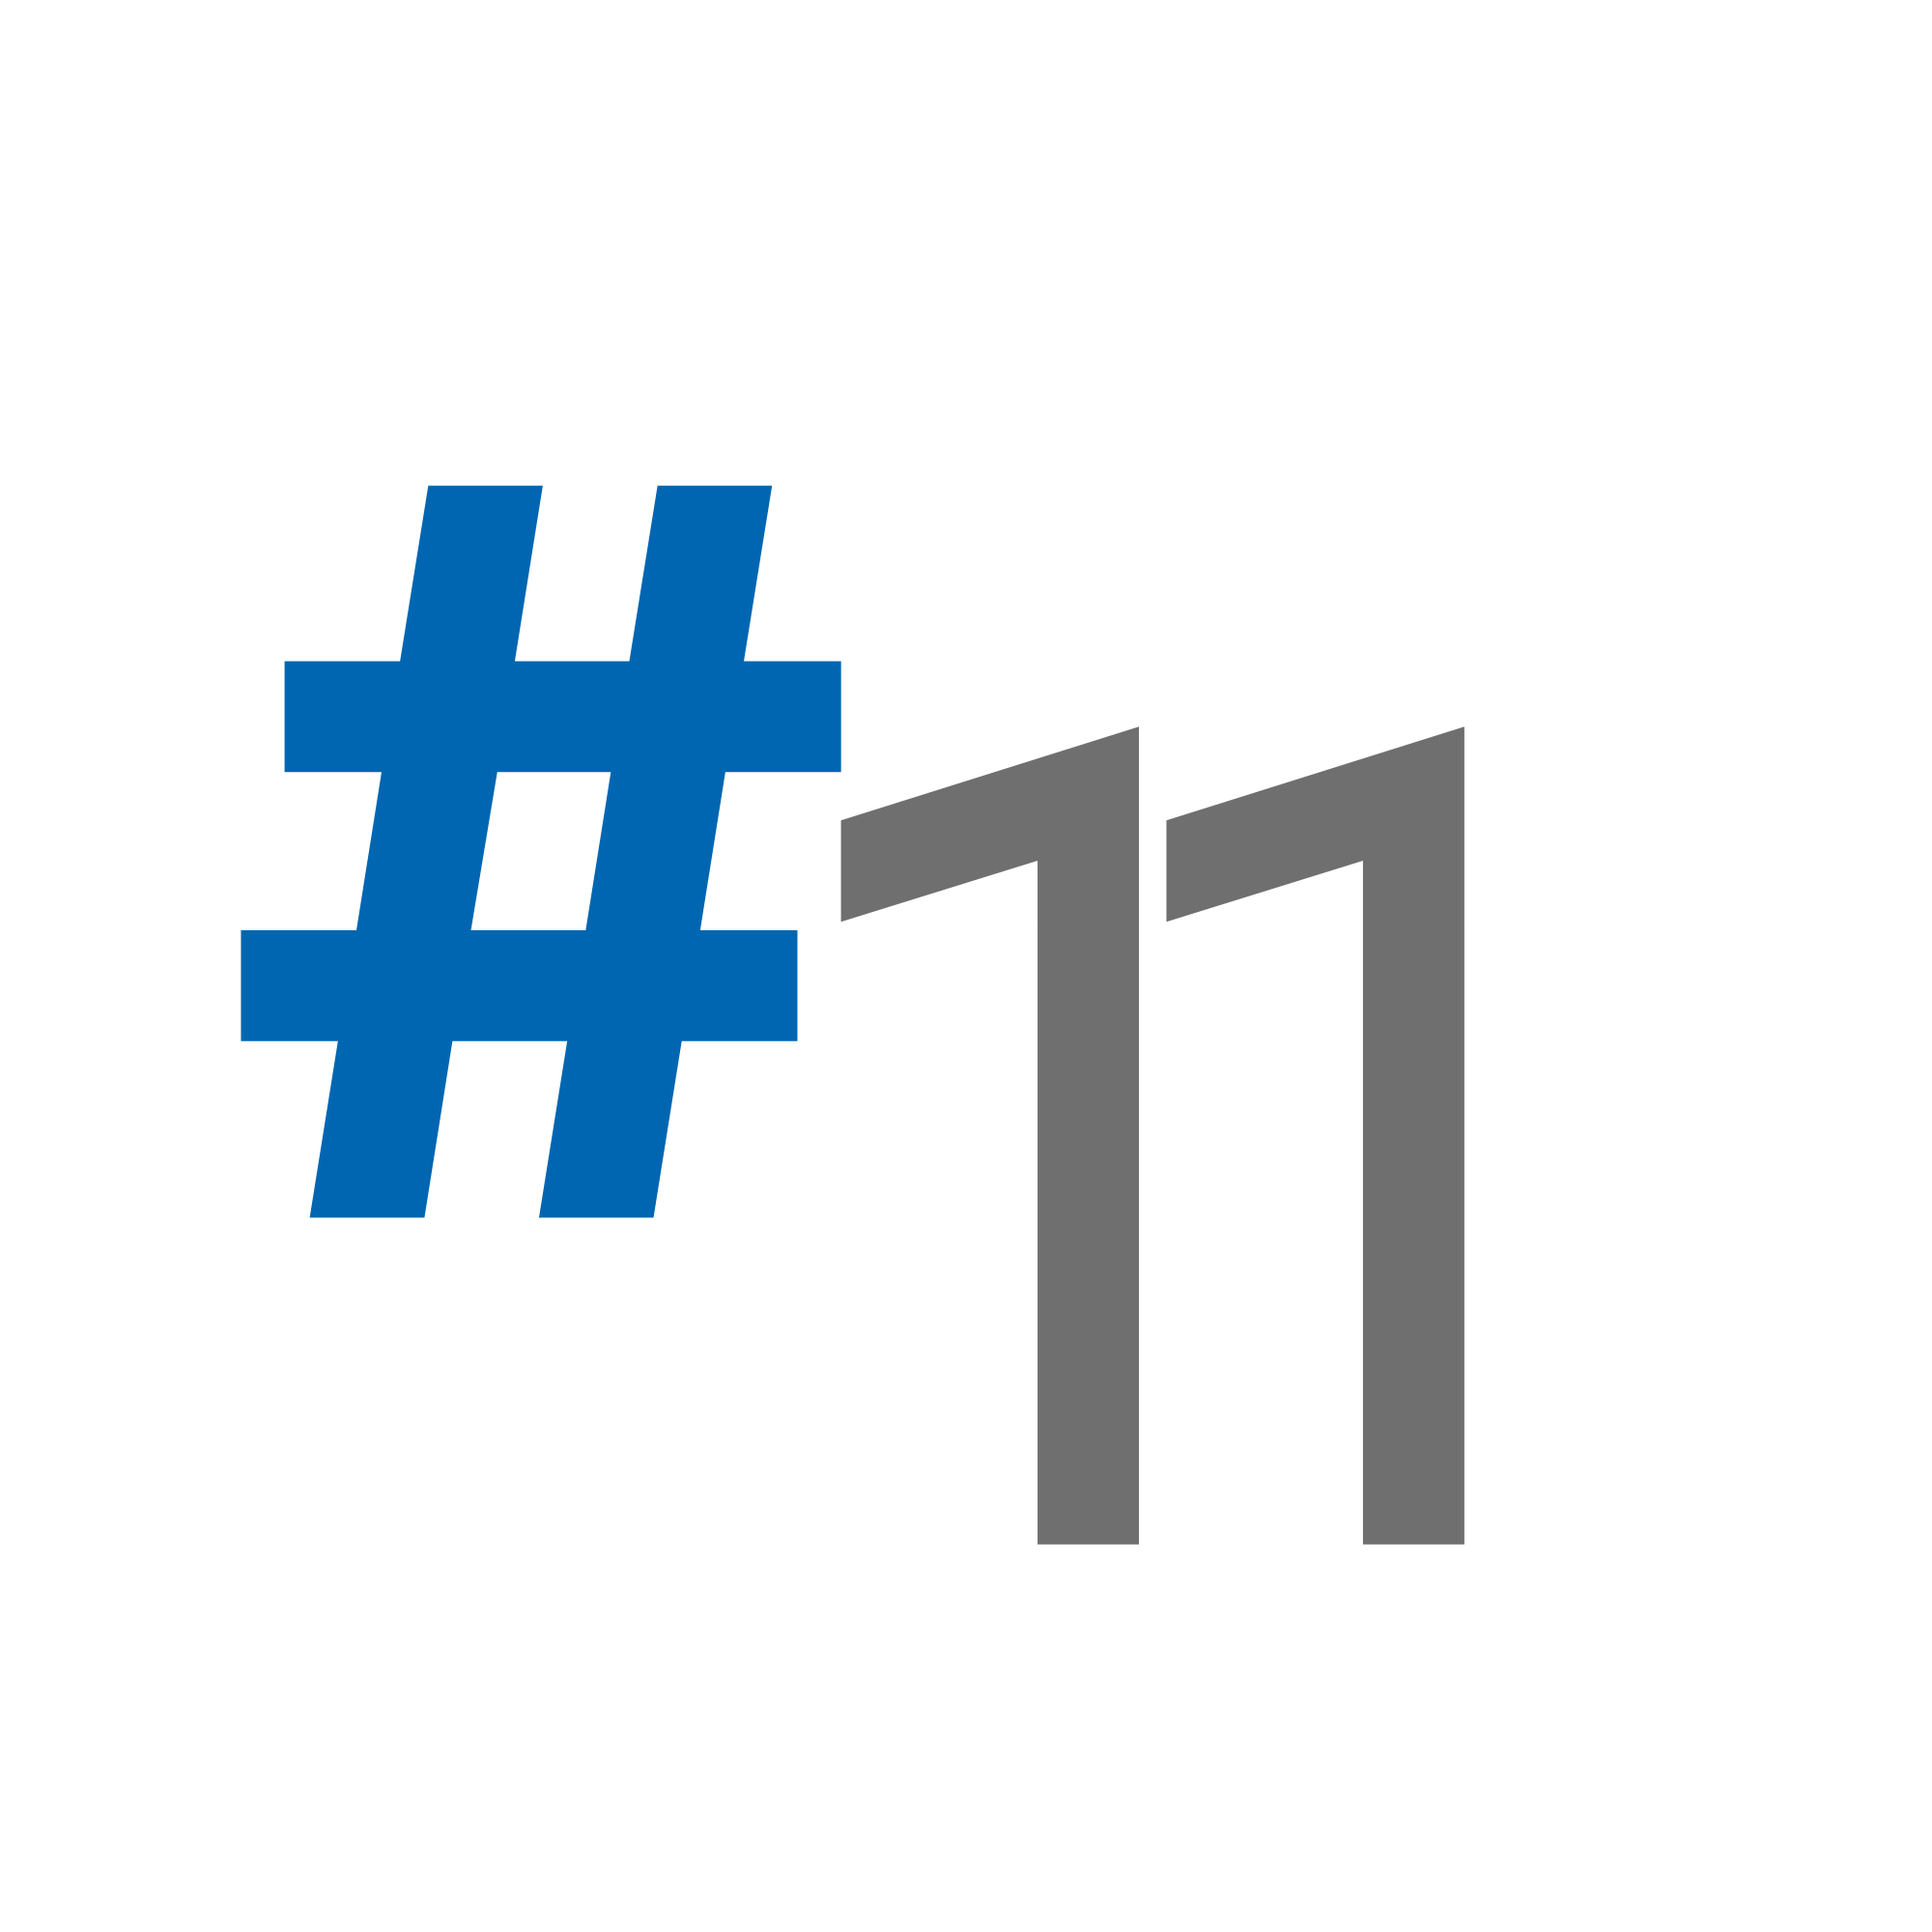 #11 